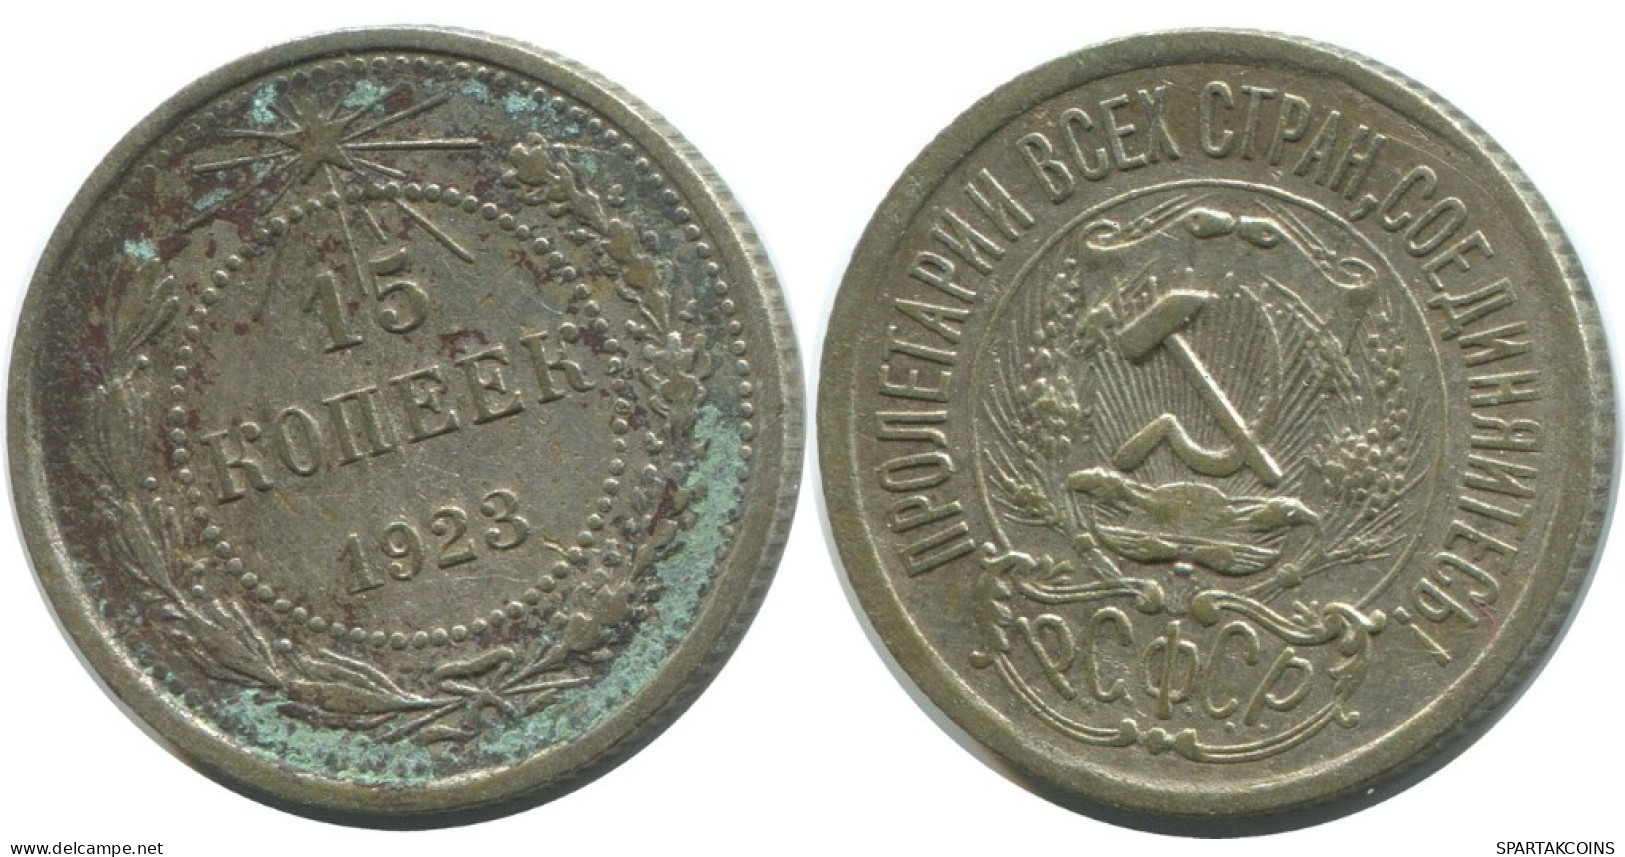 15 KOPEKS 1923 RUSSIA RSFSR SILVER Coin HIGH GRADE #AF166.4.U.A - Rusland